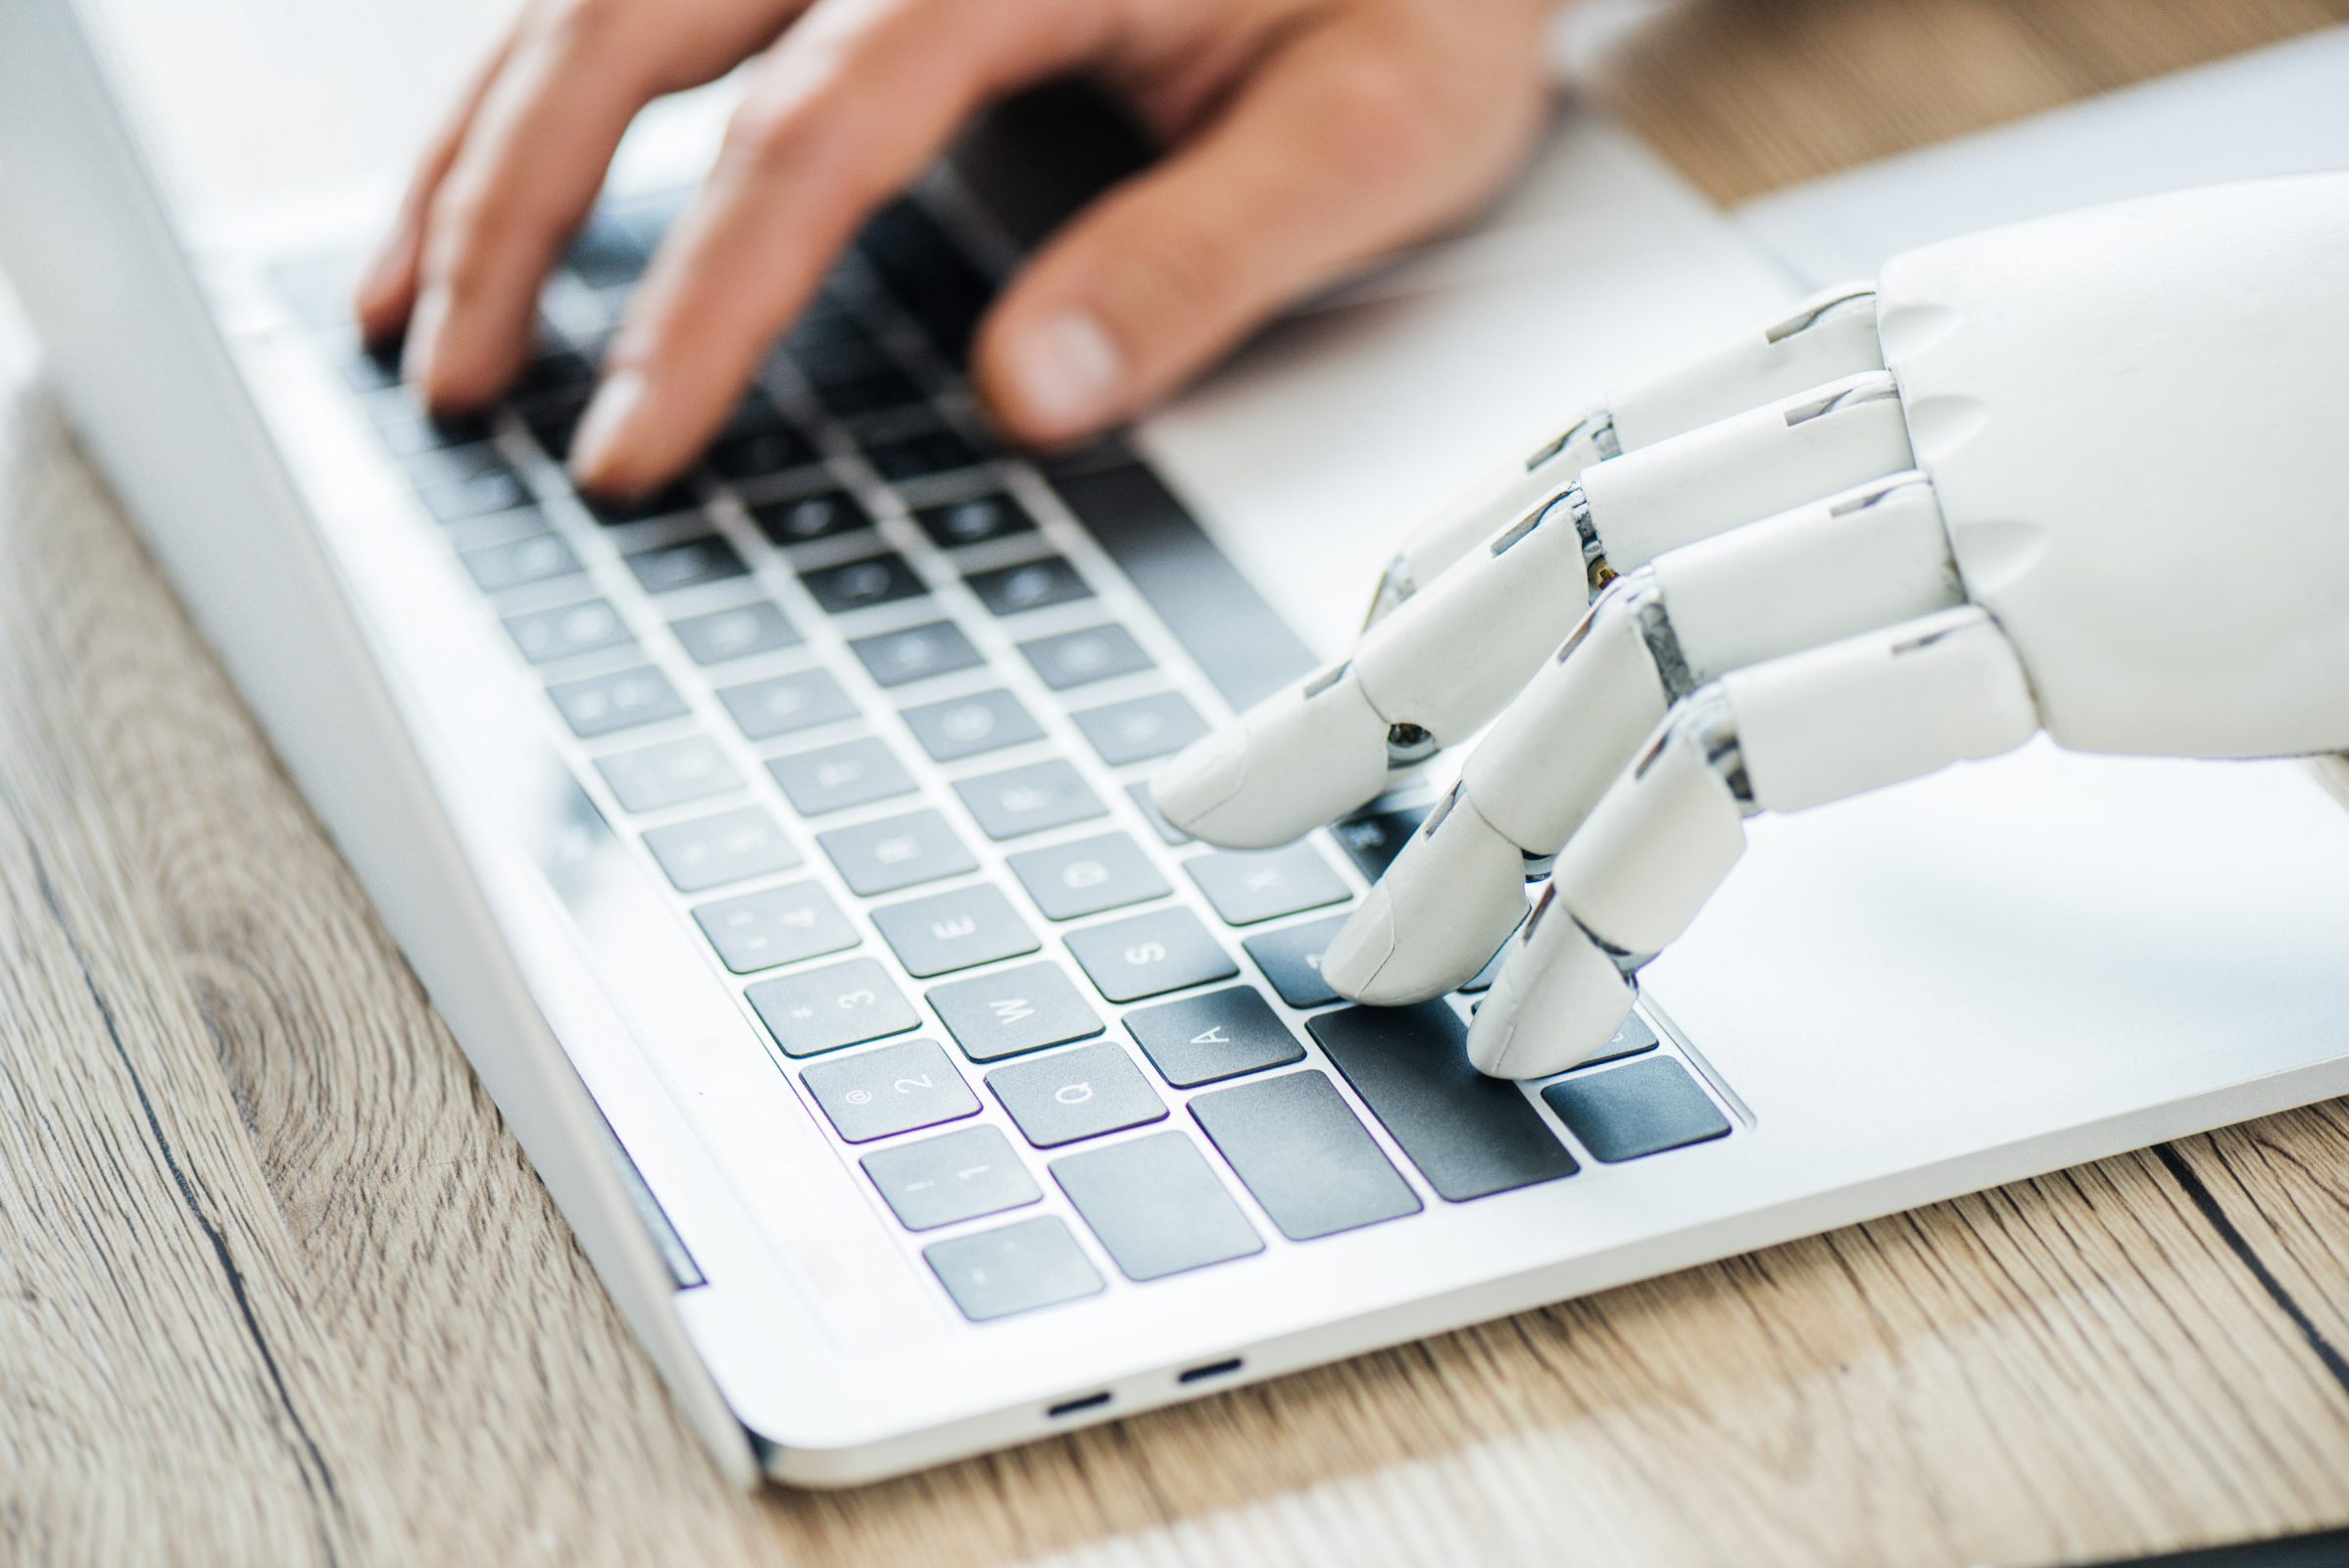 Menschenhand und Roboterhand bedienen gemeinsam die Tastatur eines Laptops